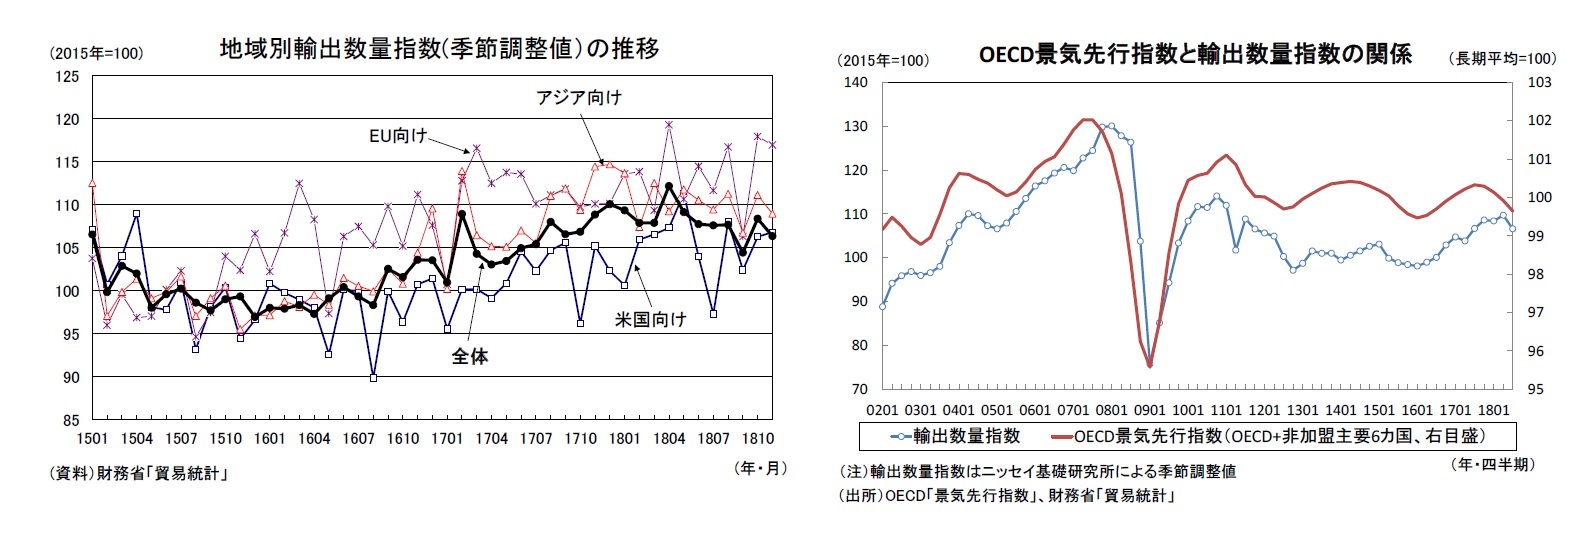 地域別輸出数量指数(季節調整値）の推移/OECD景気先行指数と輸出数量指数の関係